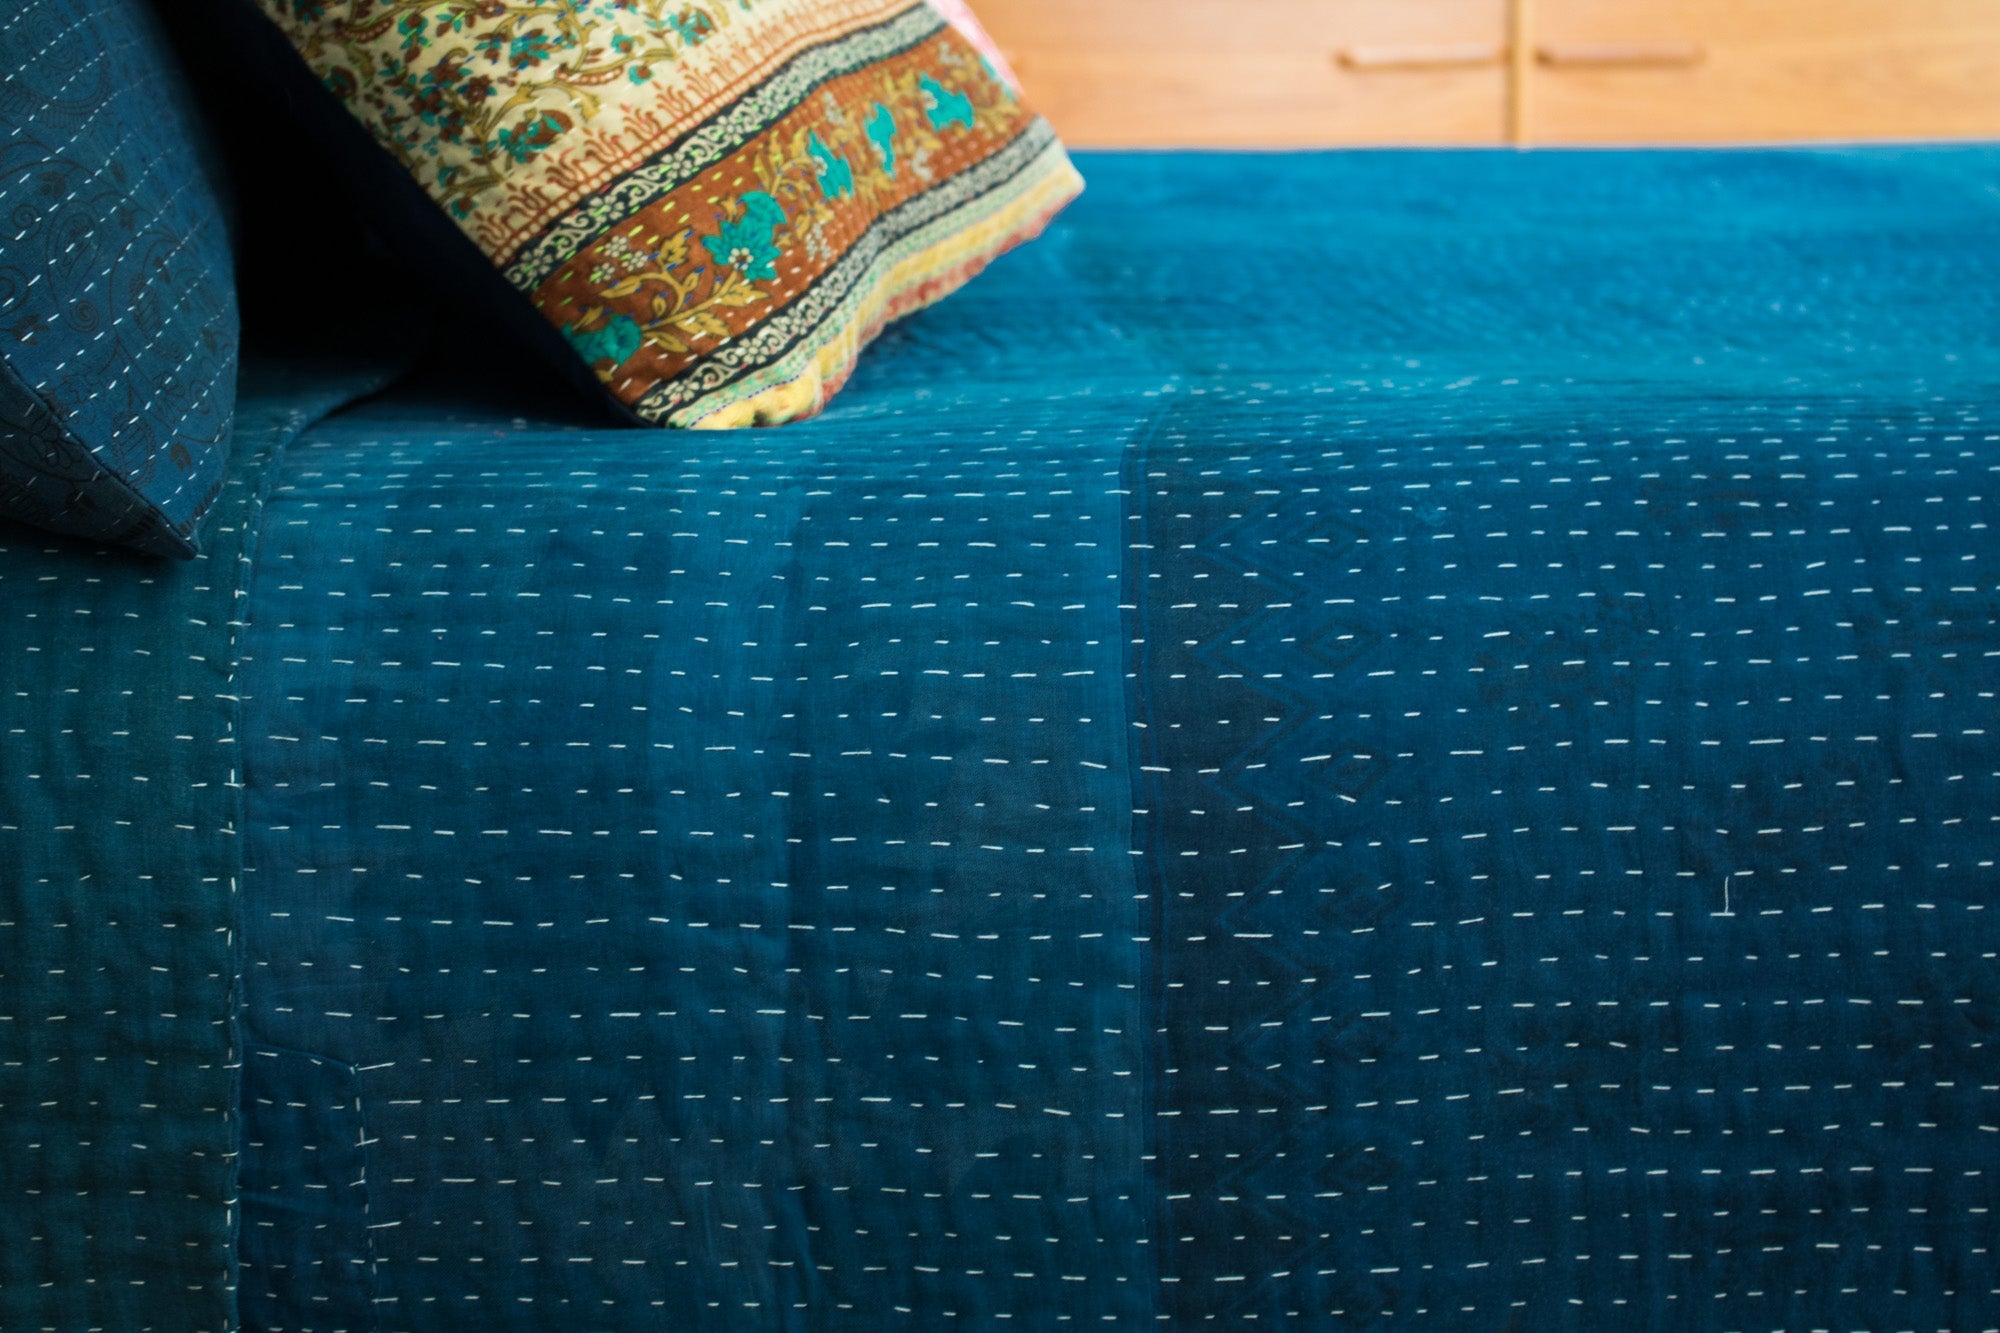 Indigo Dyed Kantha Quilts